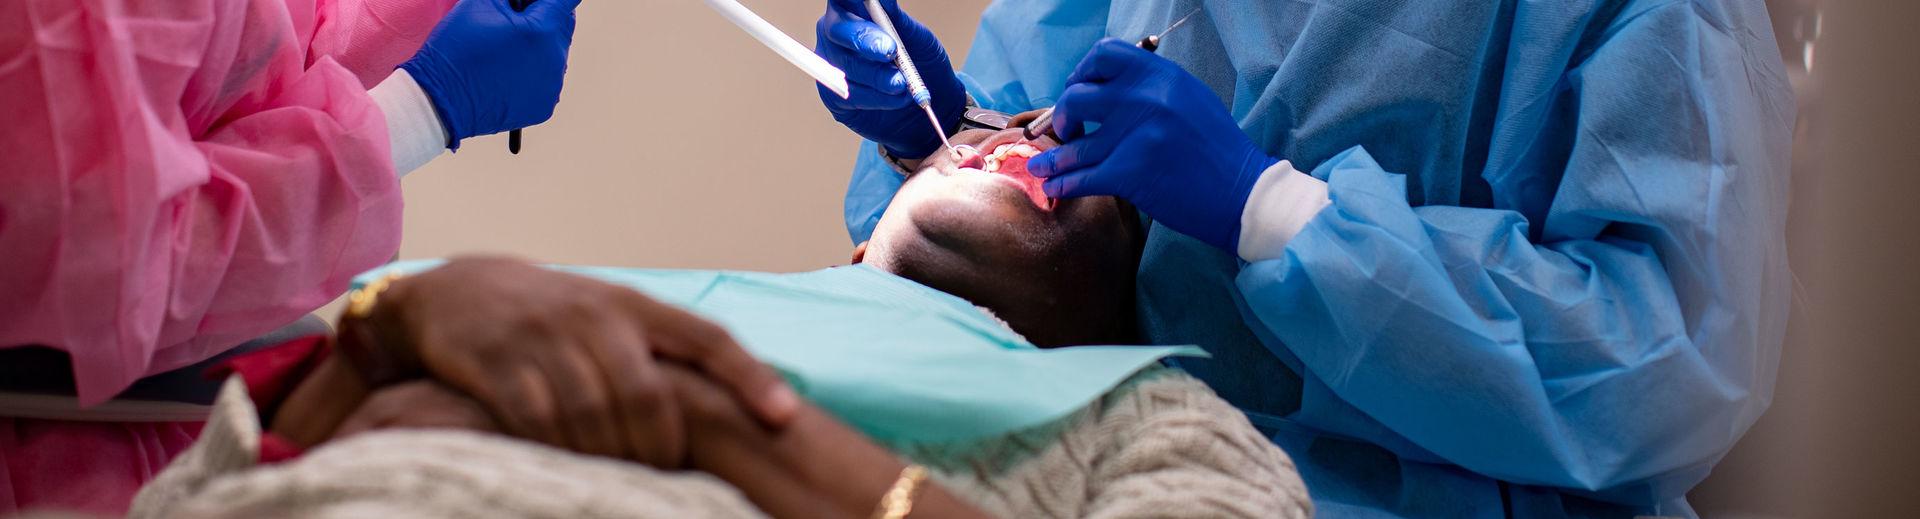 在科恩伯格牙科学院接受牙科治疗的病人. 